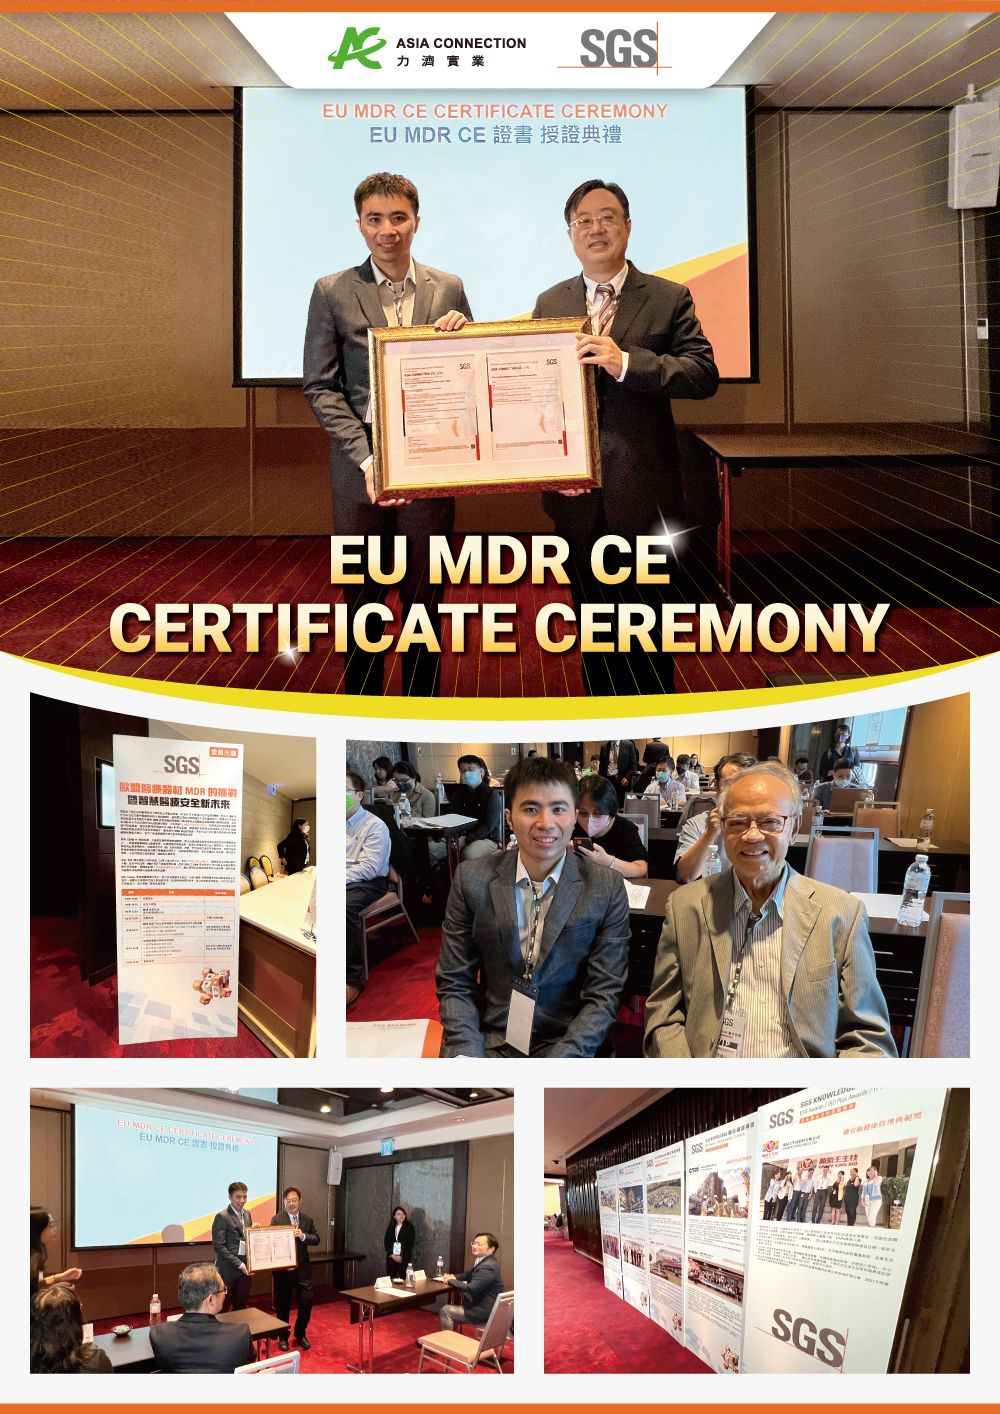 El aspirador nasal ME8202X de Asia Connection logra la certificación CE bajo el Reglamento de Dispositivos Médicos (MDR) de la UE 2017/745